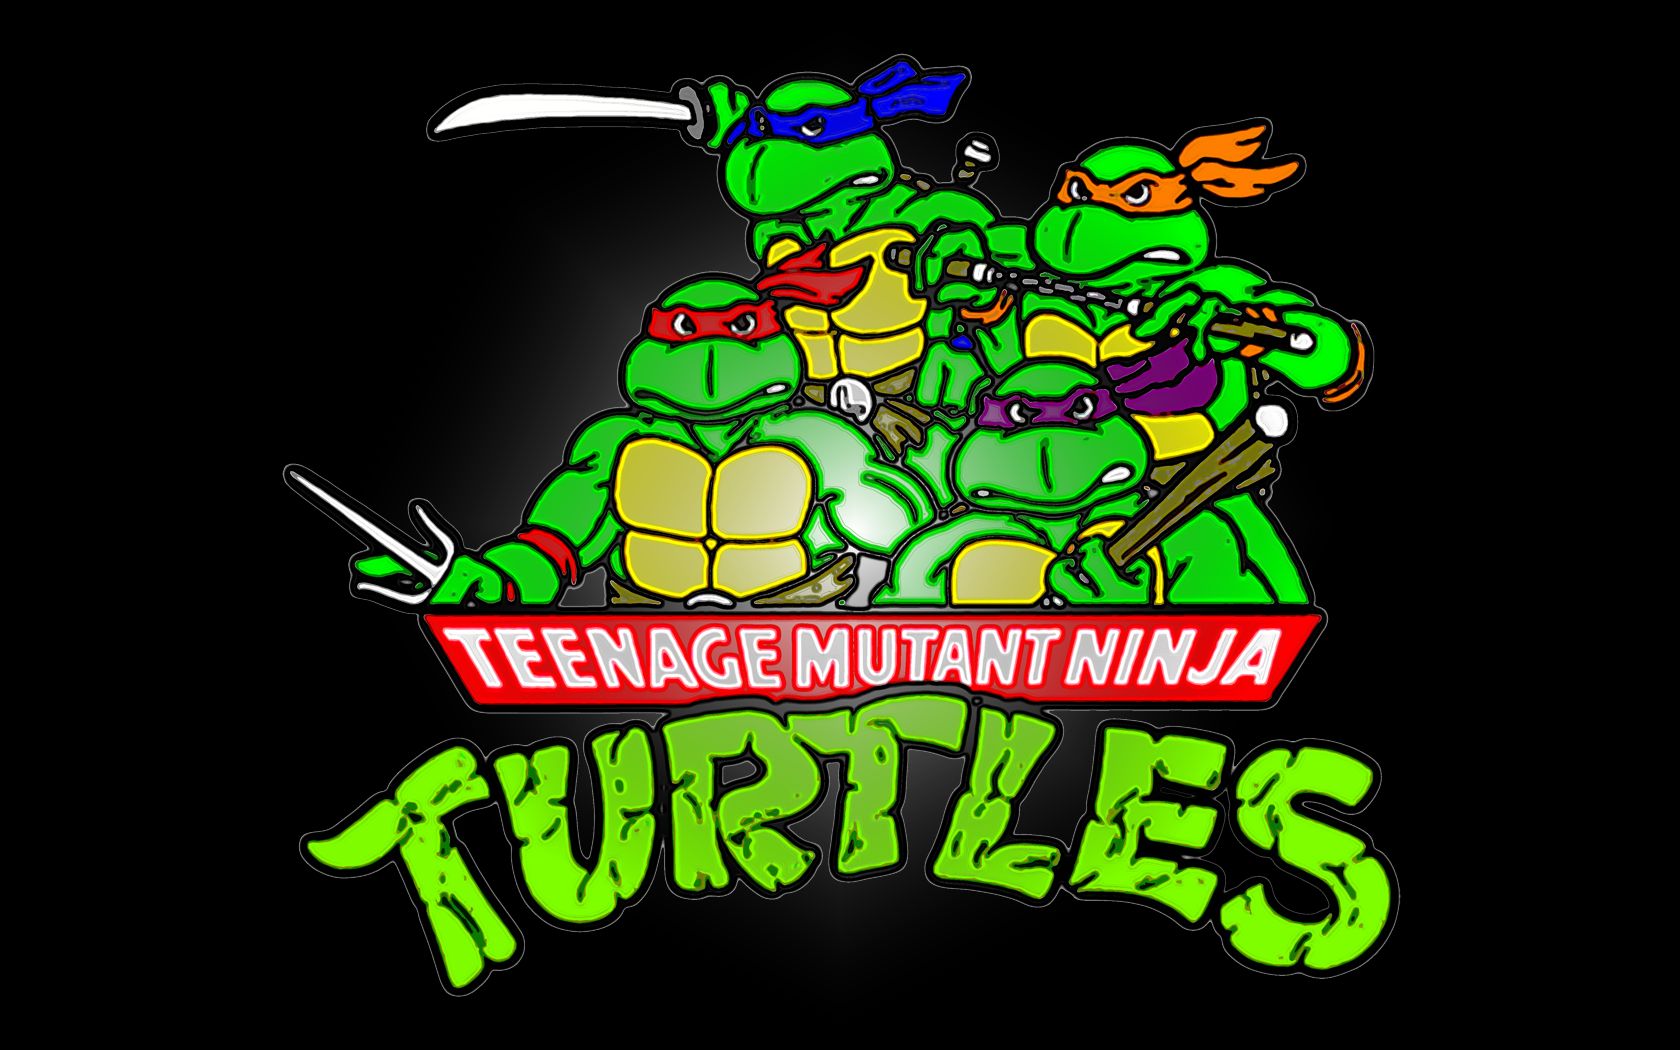 Mutant ninja turtles steam фото 36